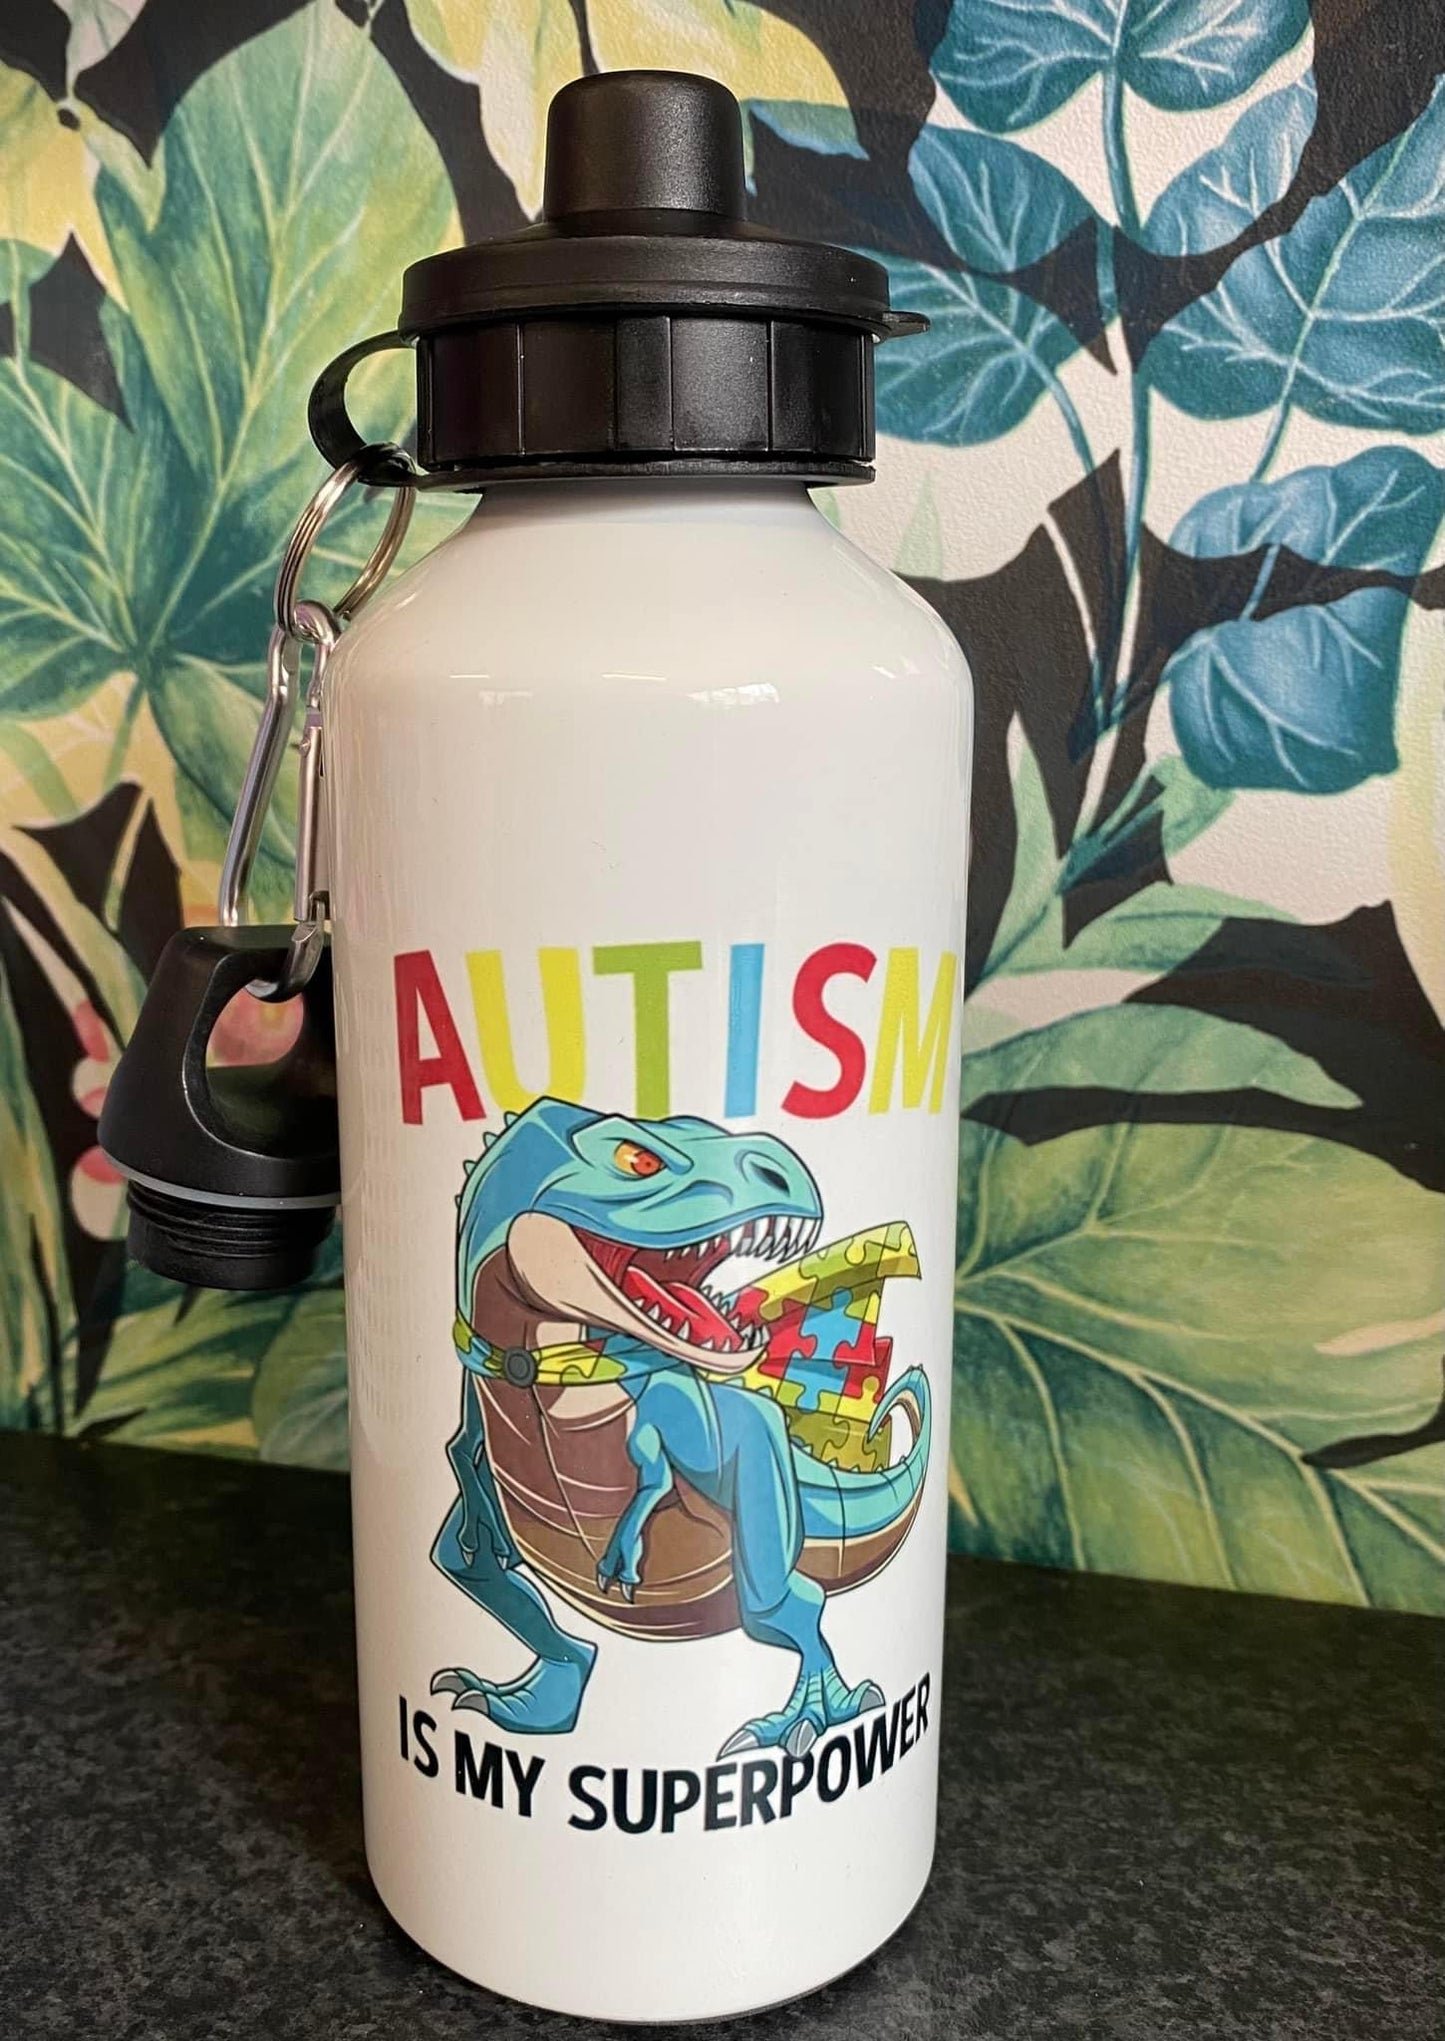 Autism is my Superpower, Dinosaur, Travel Mug, Ceramic Mug, Coaster, Cushion, Water Bottle, Keyring